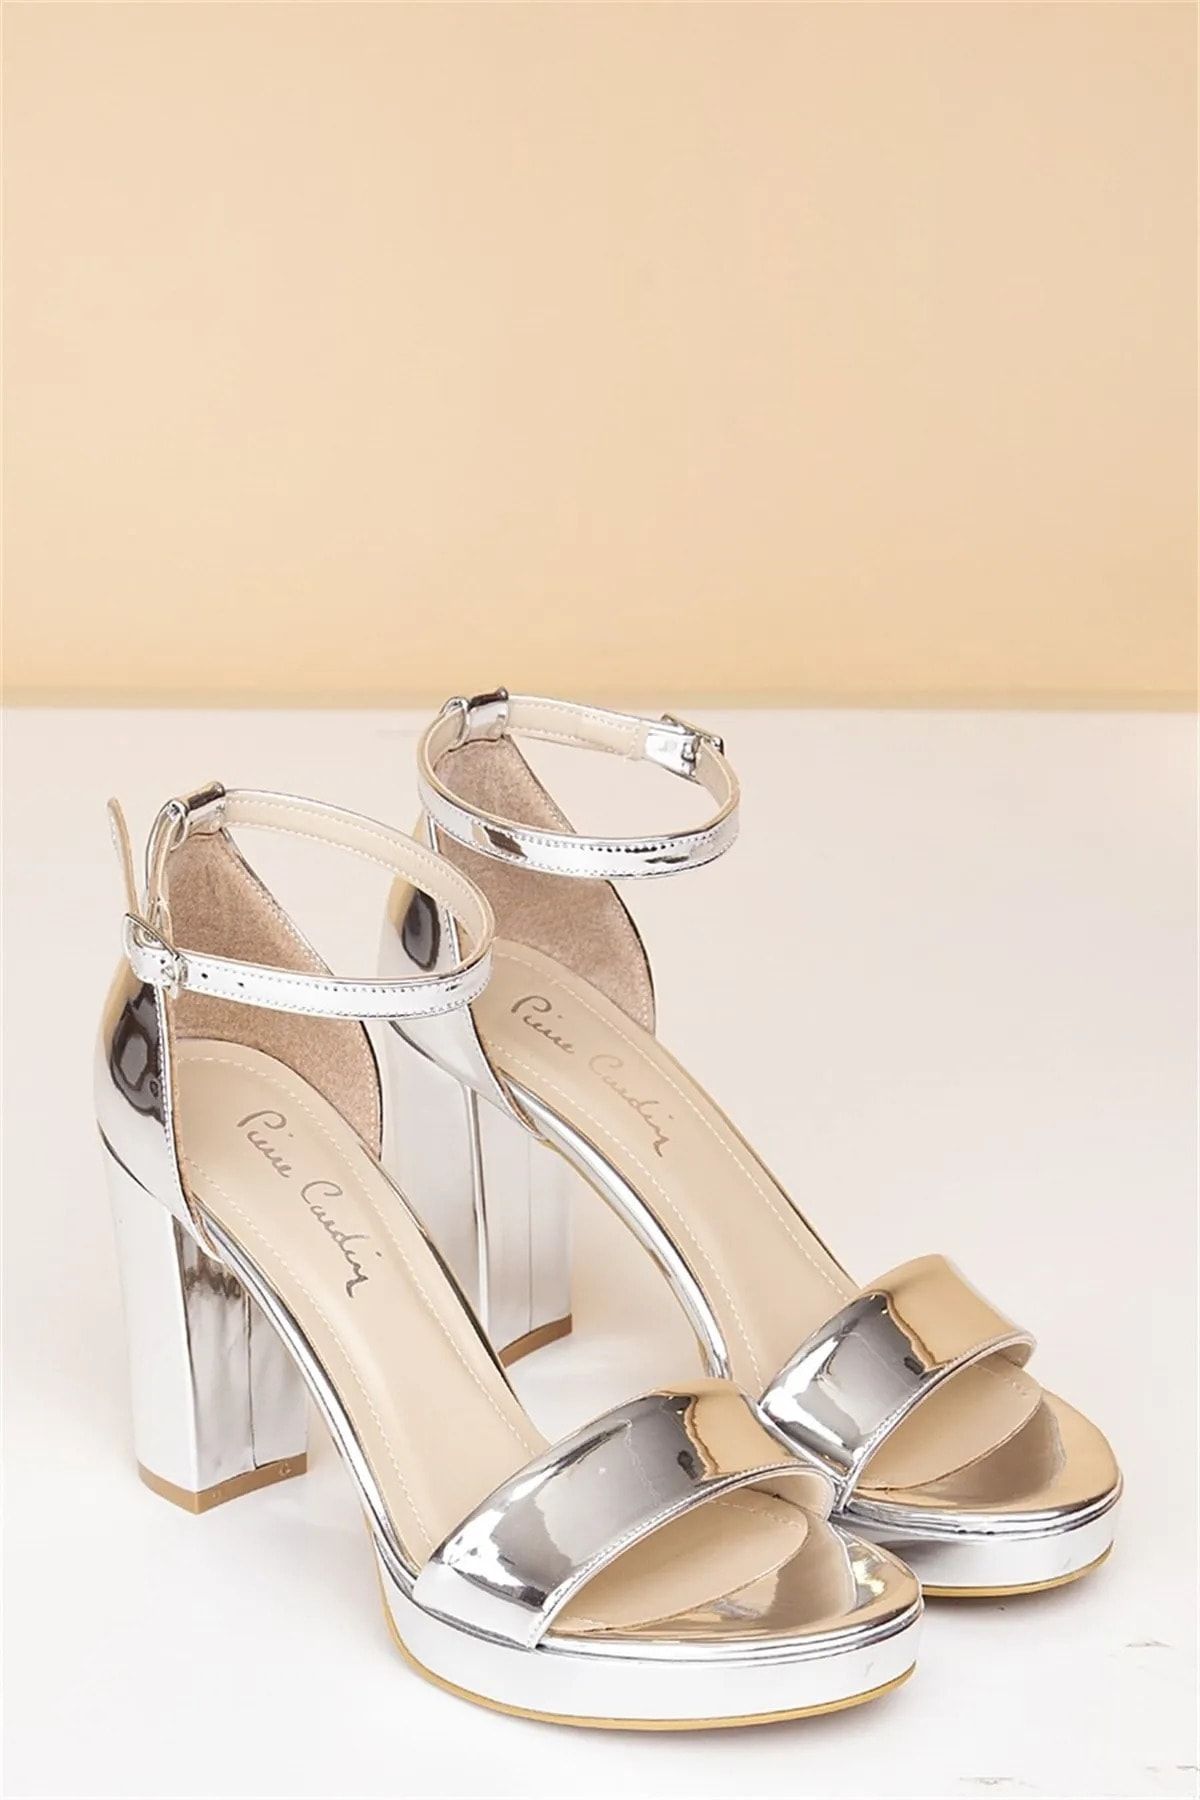 Pierre Cardin ® | Pc-50167 - 3822 Rugan Gümüş - Kadın Topuklu Ayakkabı